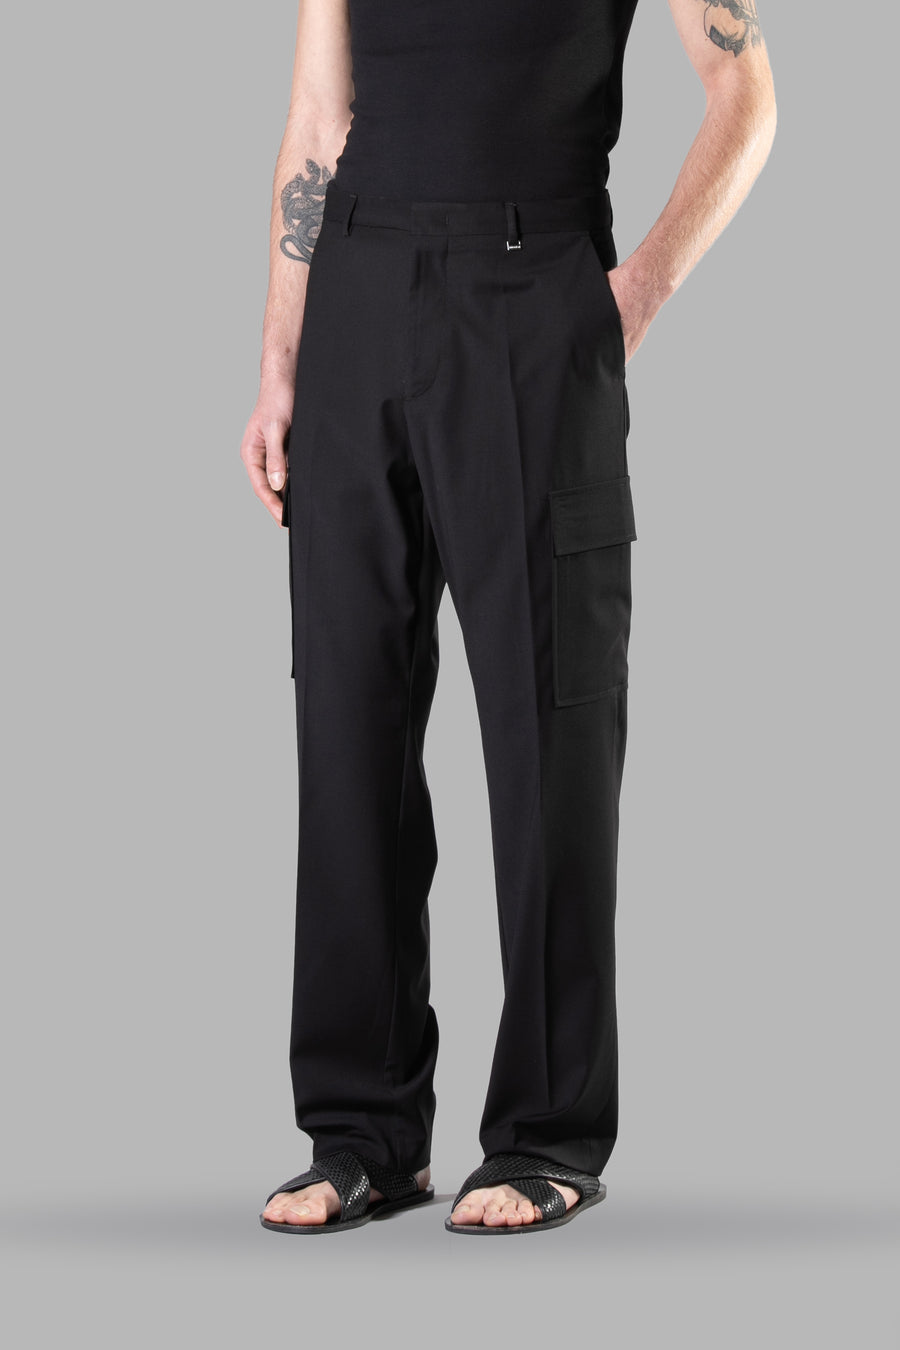 Pantalone fondo ampio con tasconi applicati - Nero